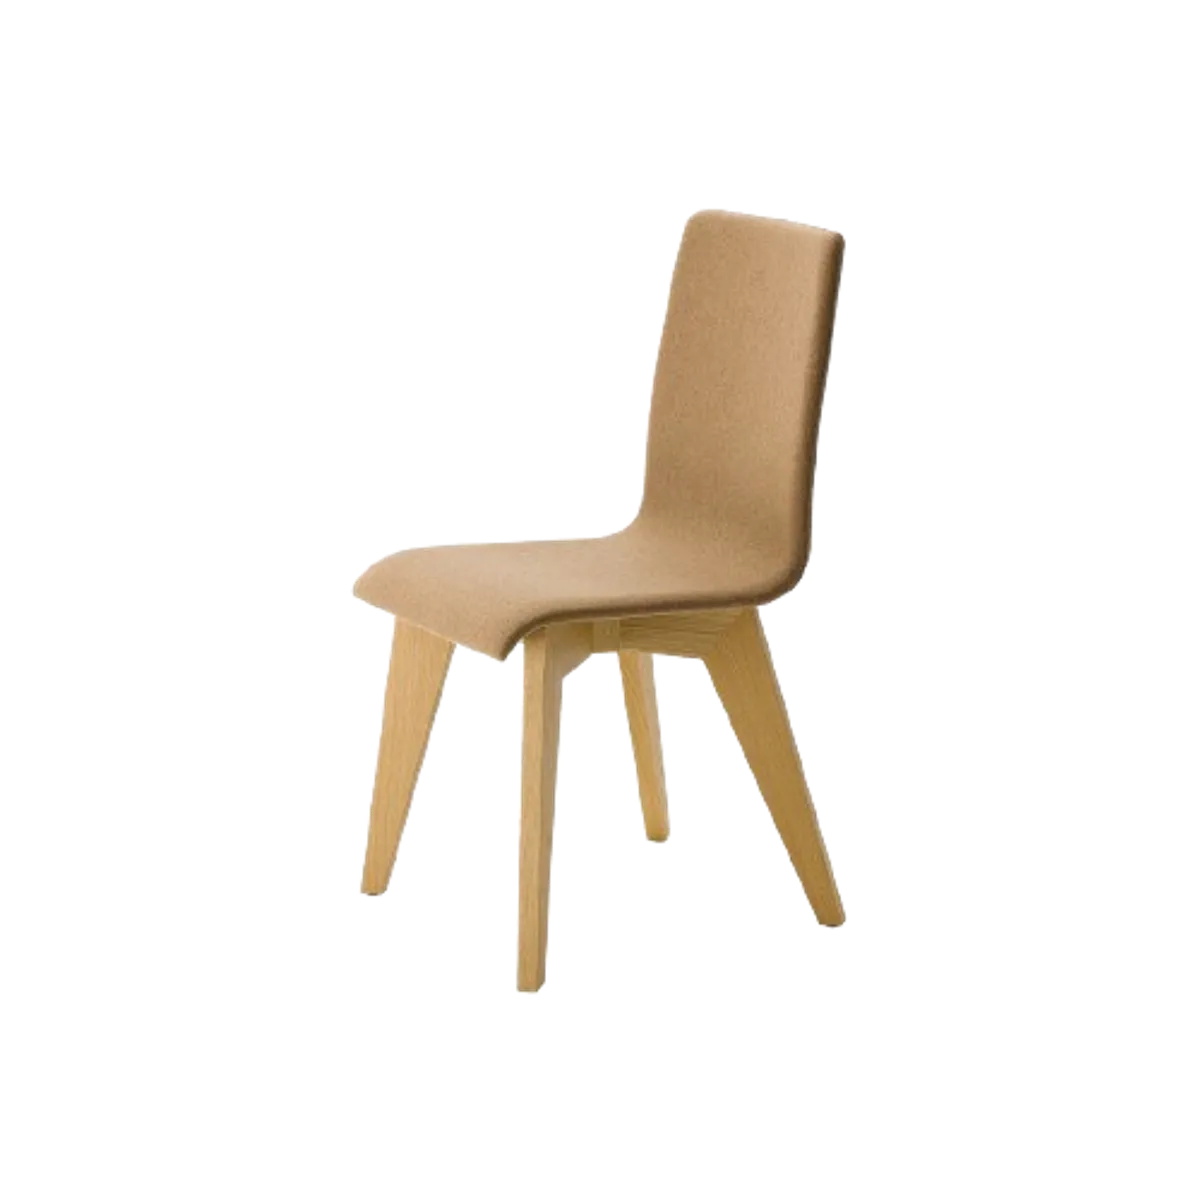 Gelato soft side chair Thumbnail